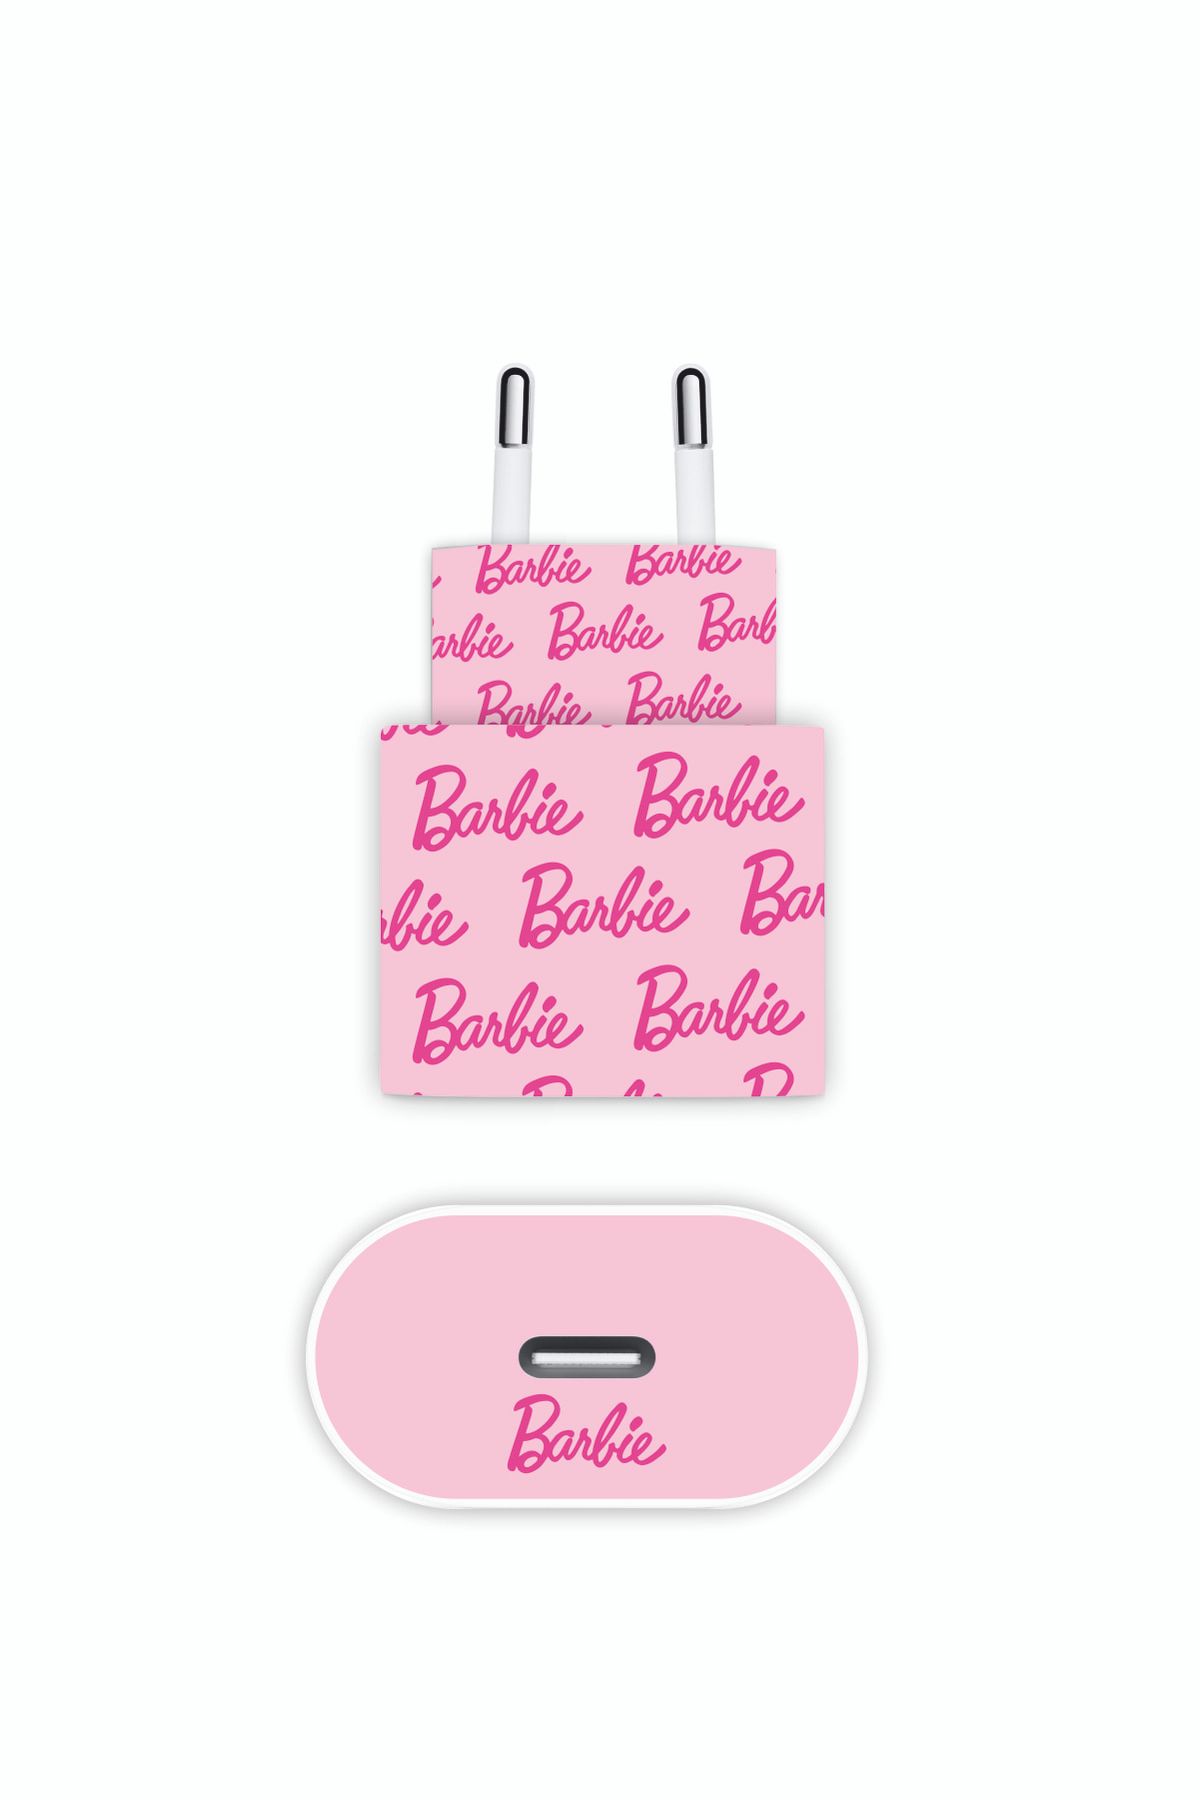 STYL SHOP Iphone 20w Uyumlu Barbie Pembe Yazılı Şarj Aleti Kaplaması - Full Kaplama Şarj Stickerı